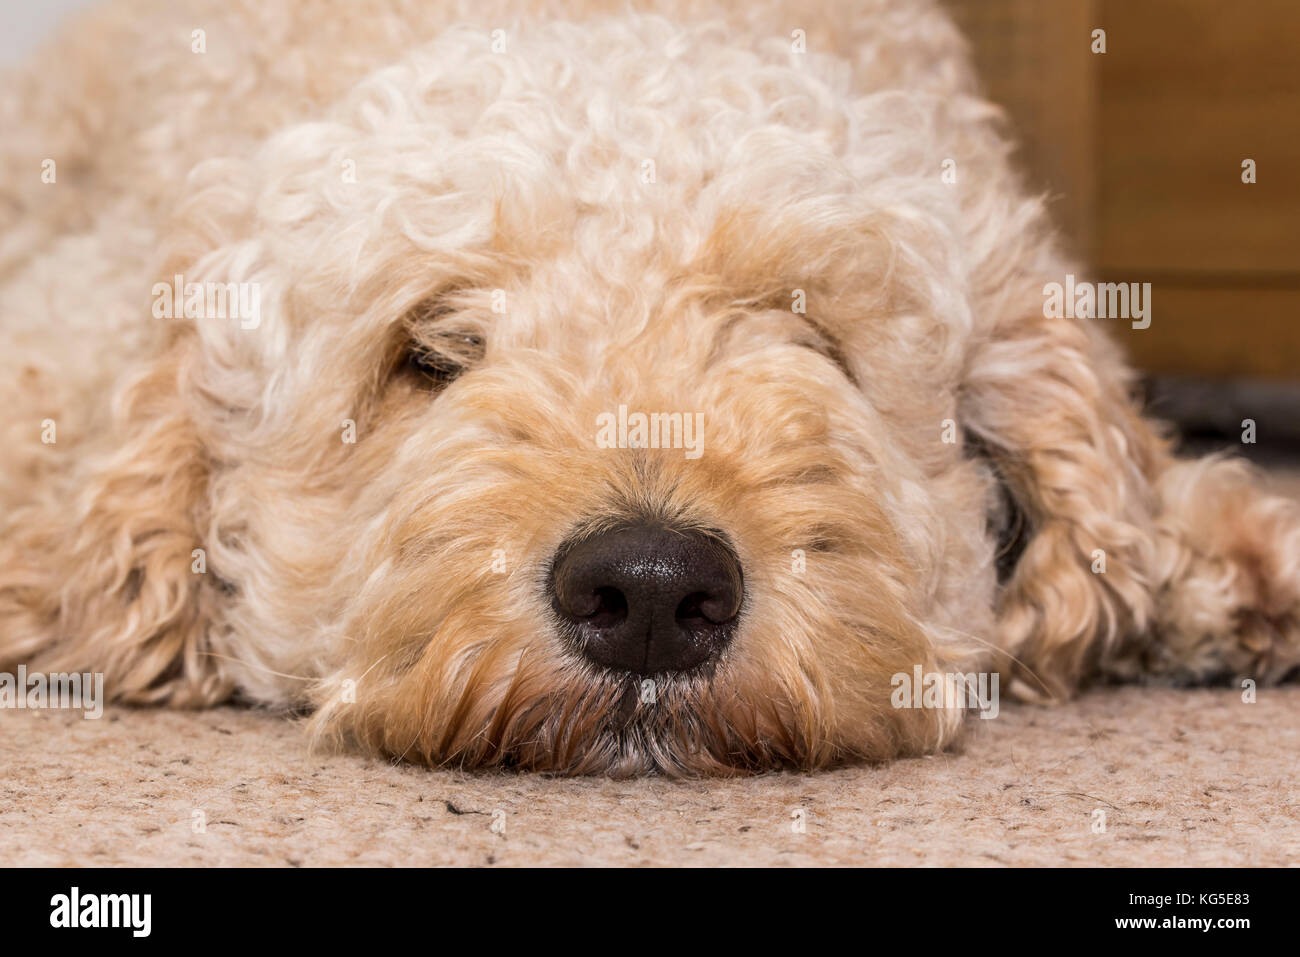 Labradoodle Hund flach auf dem Boden Stockfotografie - Alamy